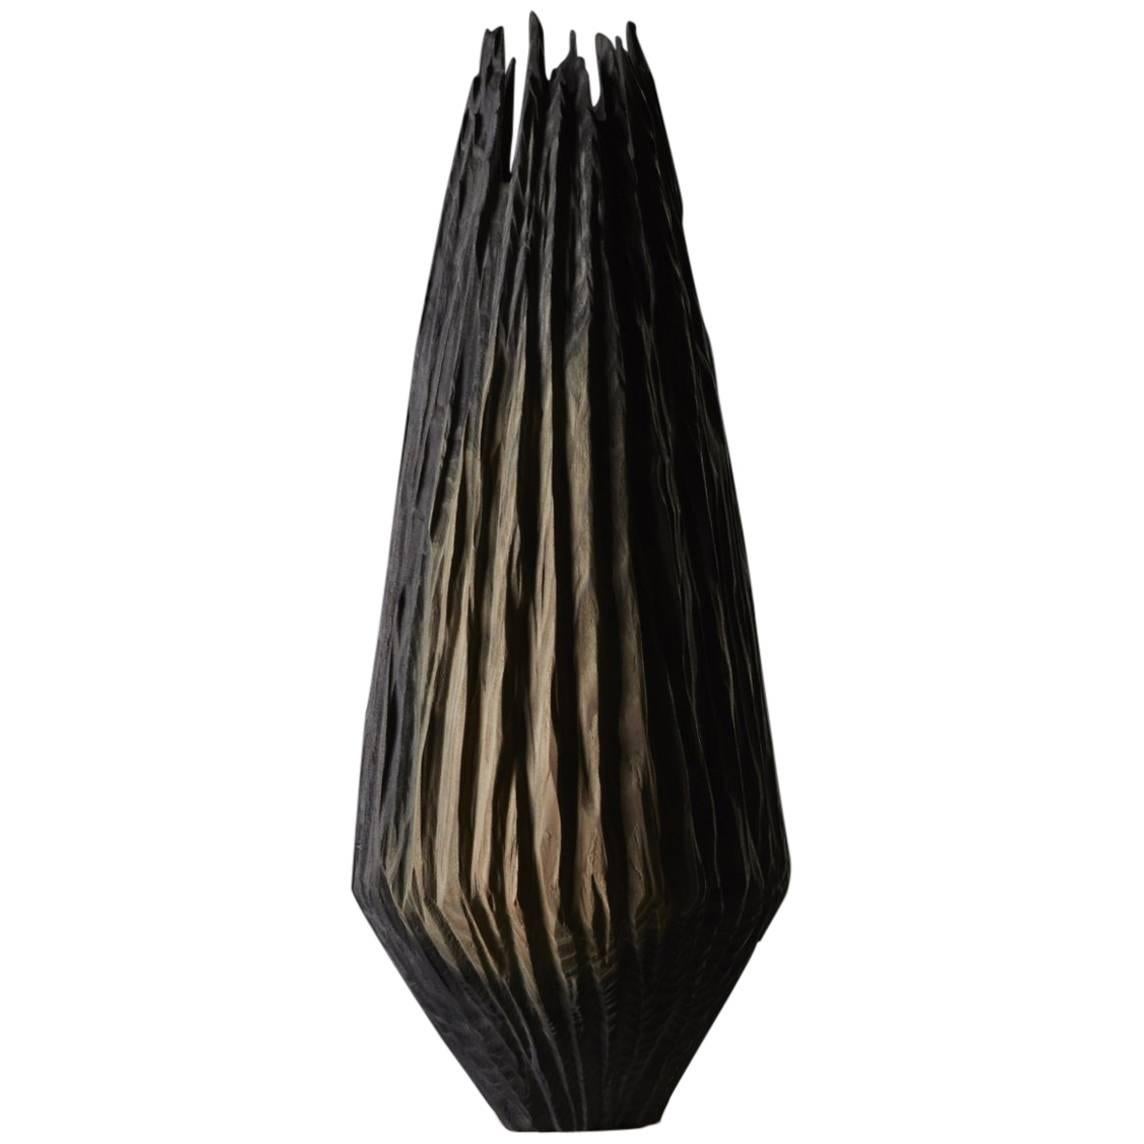 Handmade Giant Redwood Black Basalte Vessel by Eleanor Lakelin